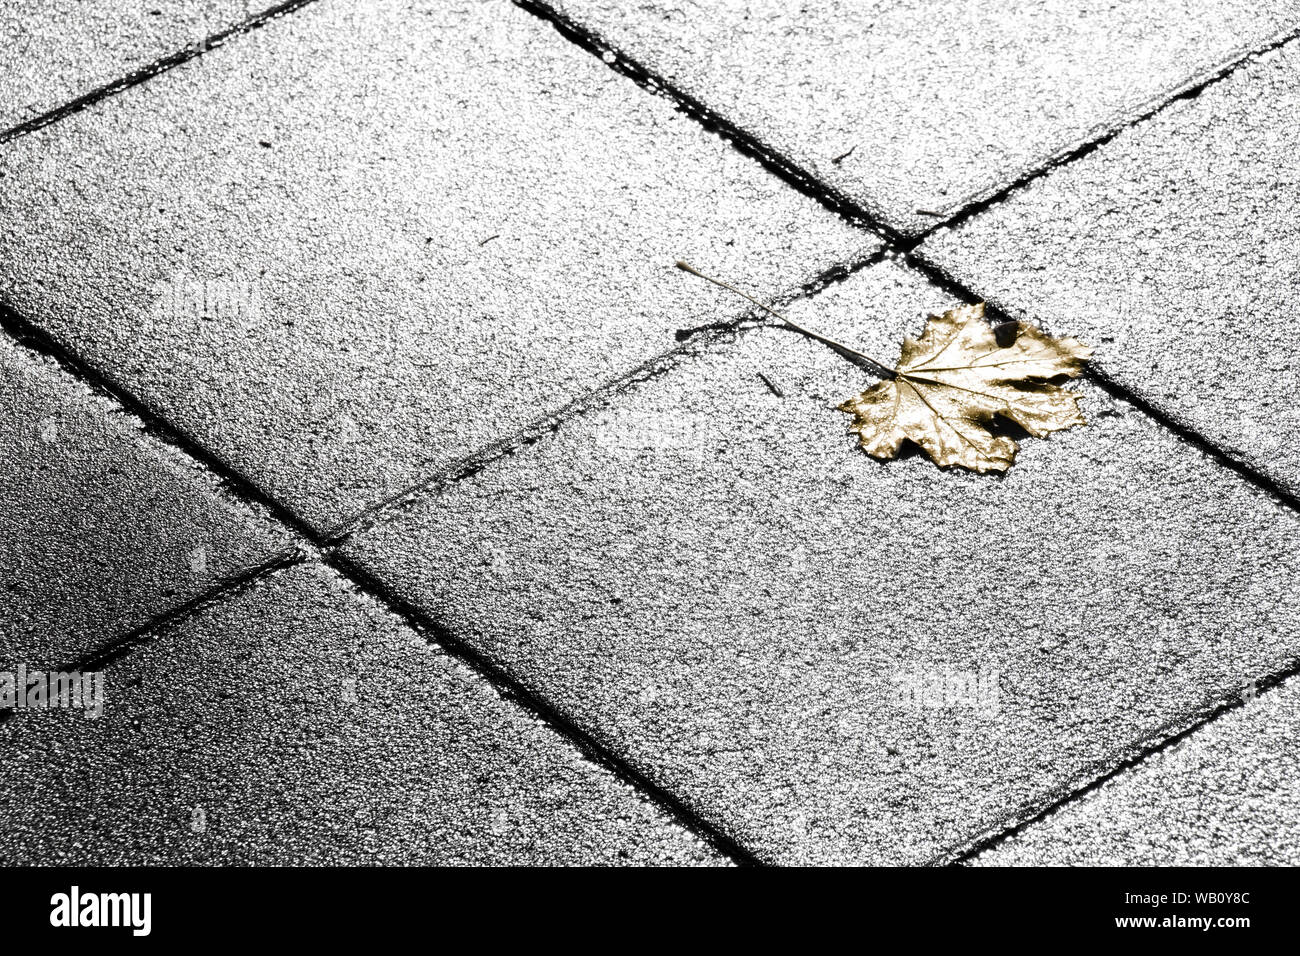 Golden Leaf caduti sulla strada in bianco e nero Foto Stock